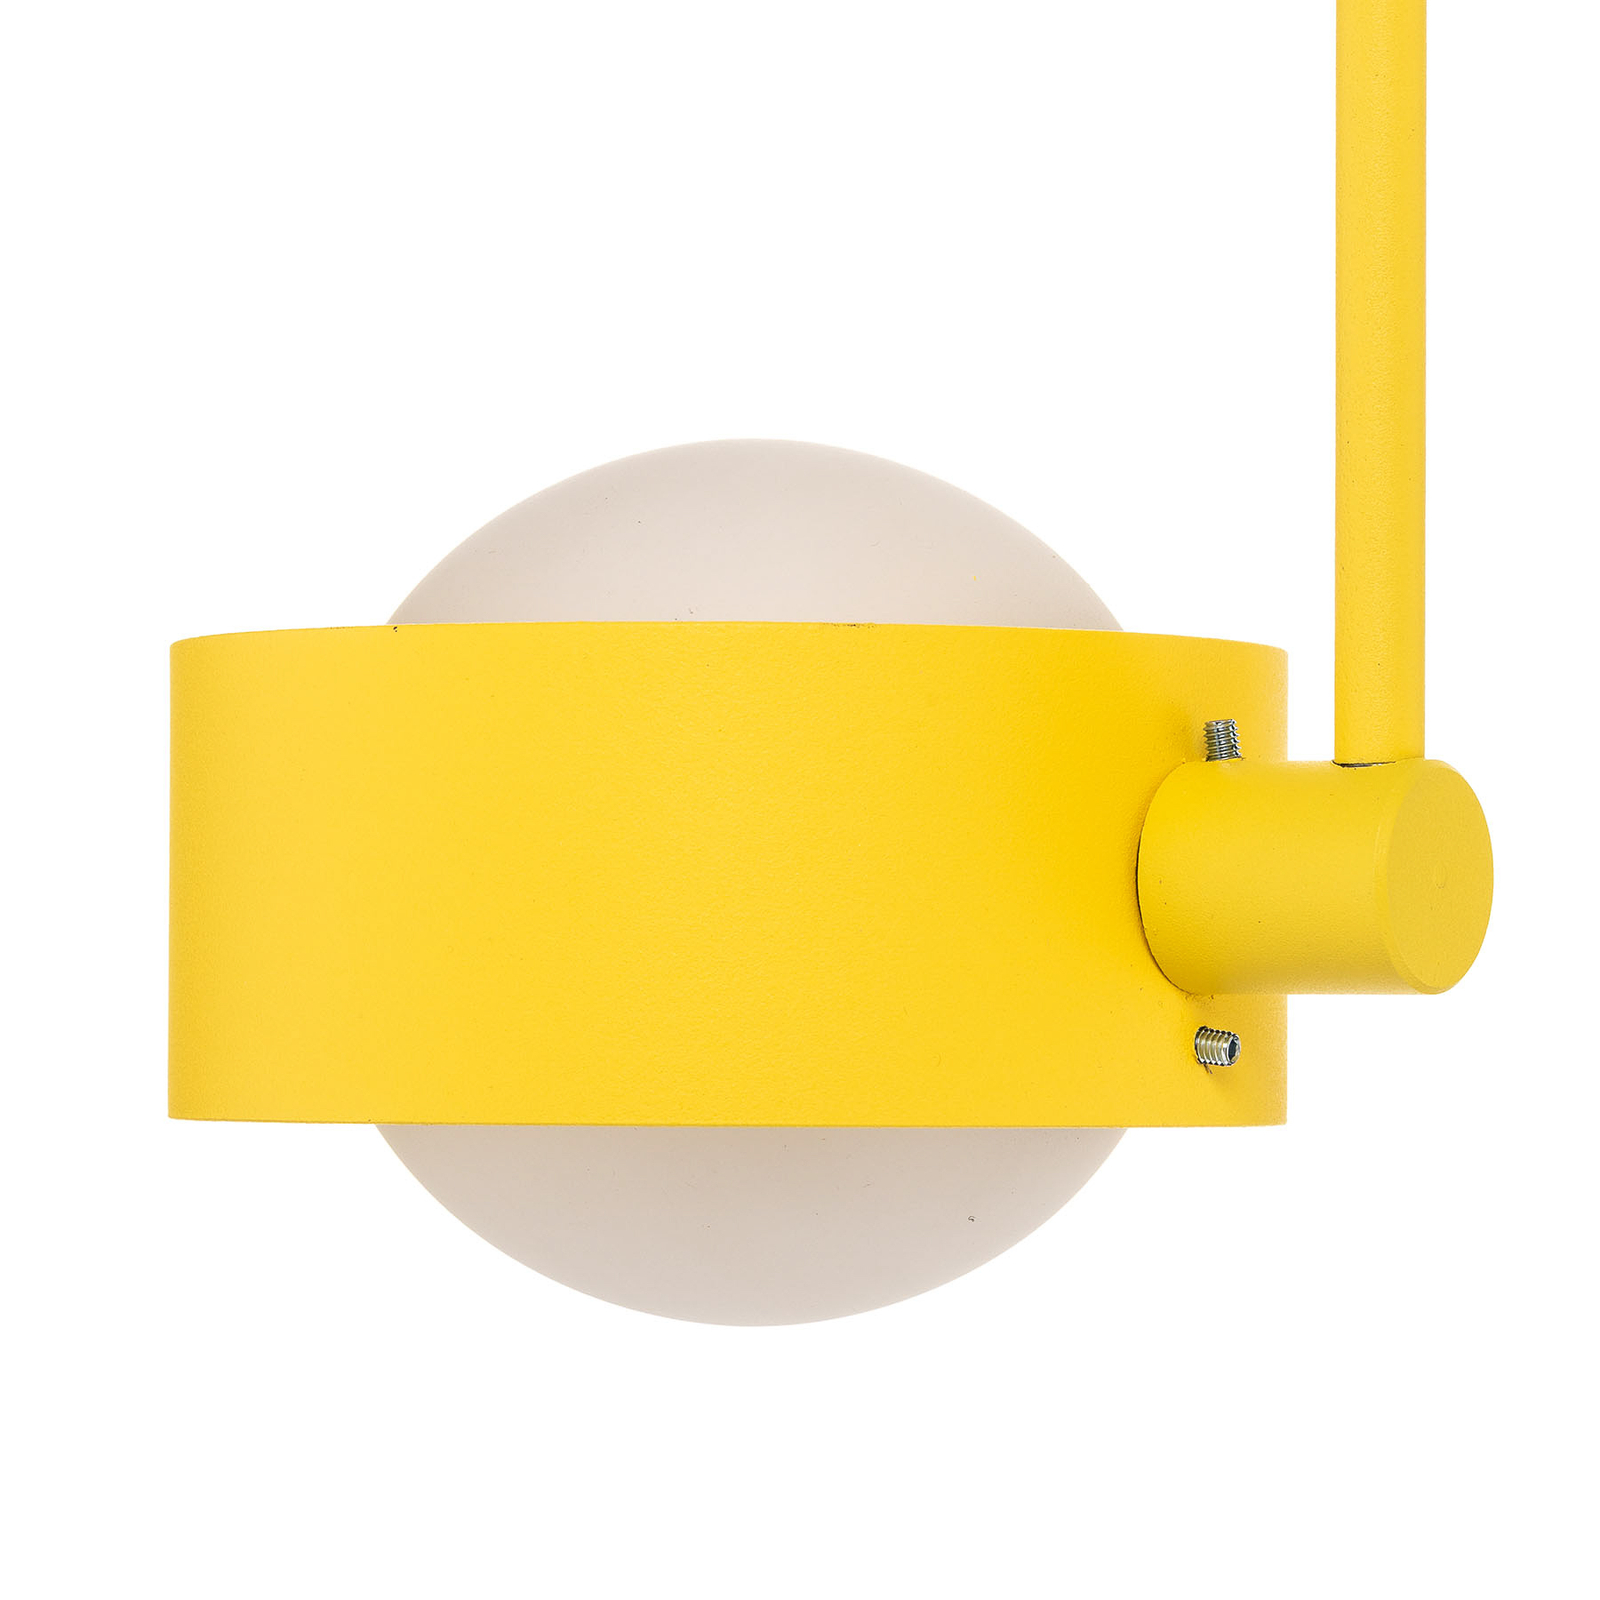 Taklampe Mado av stål, gul, 2 lyskilder